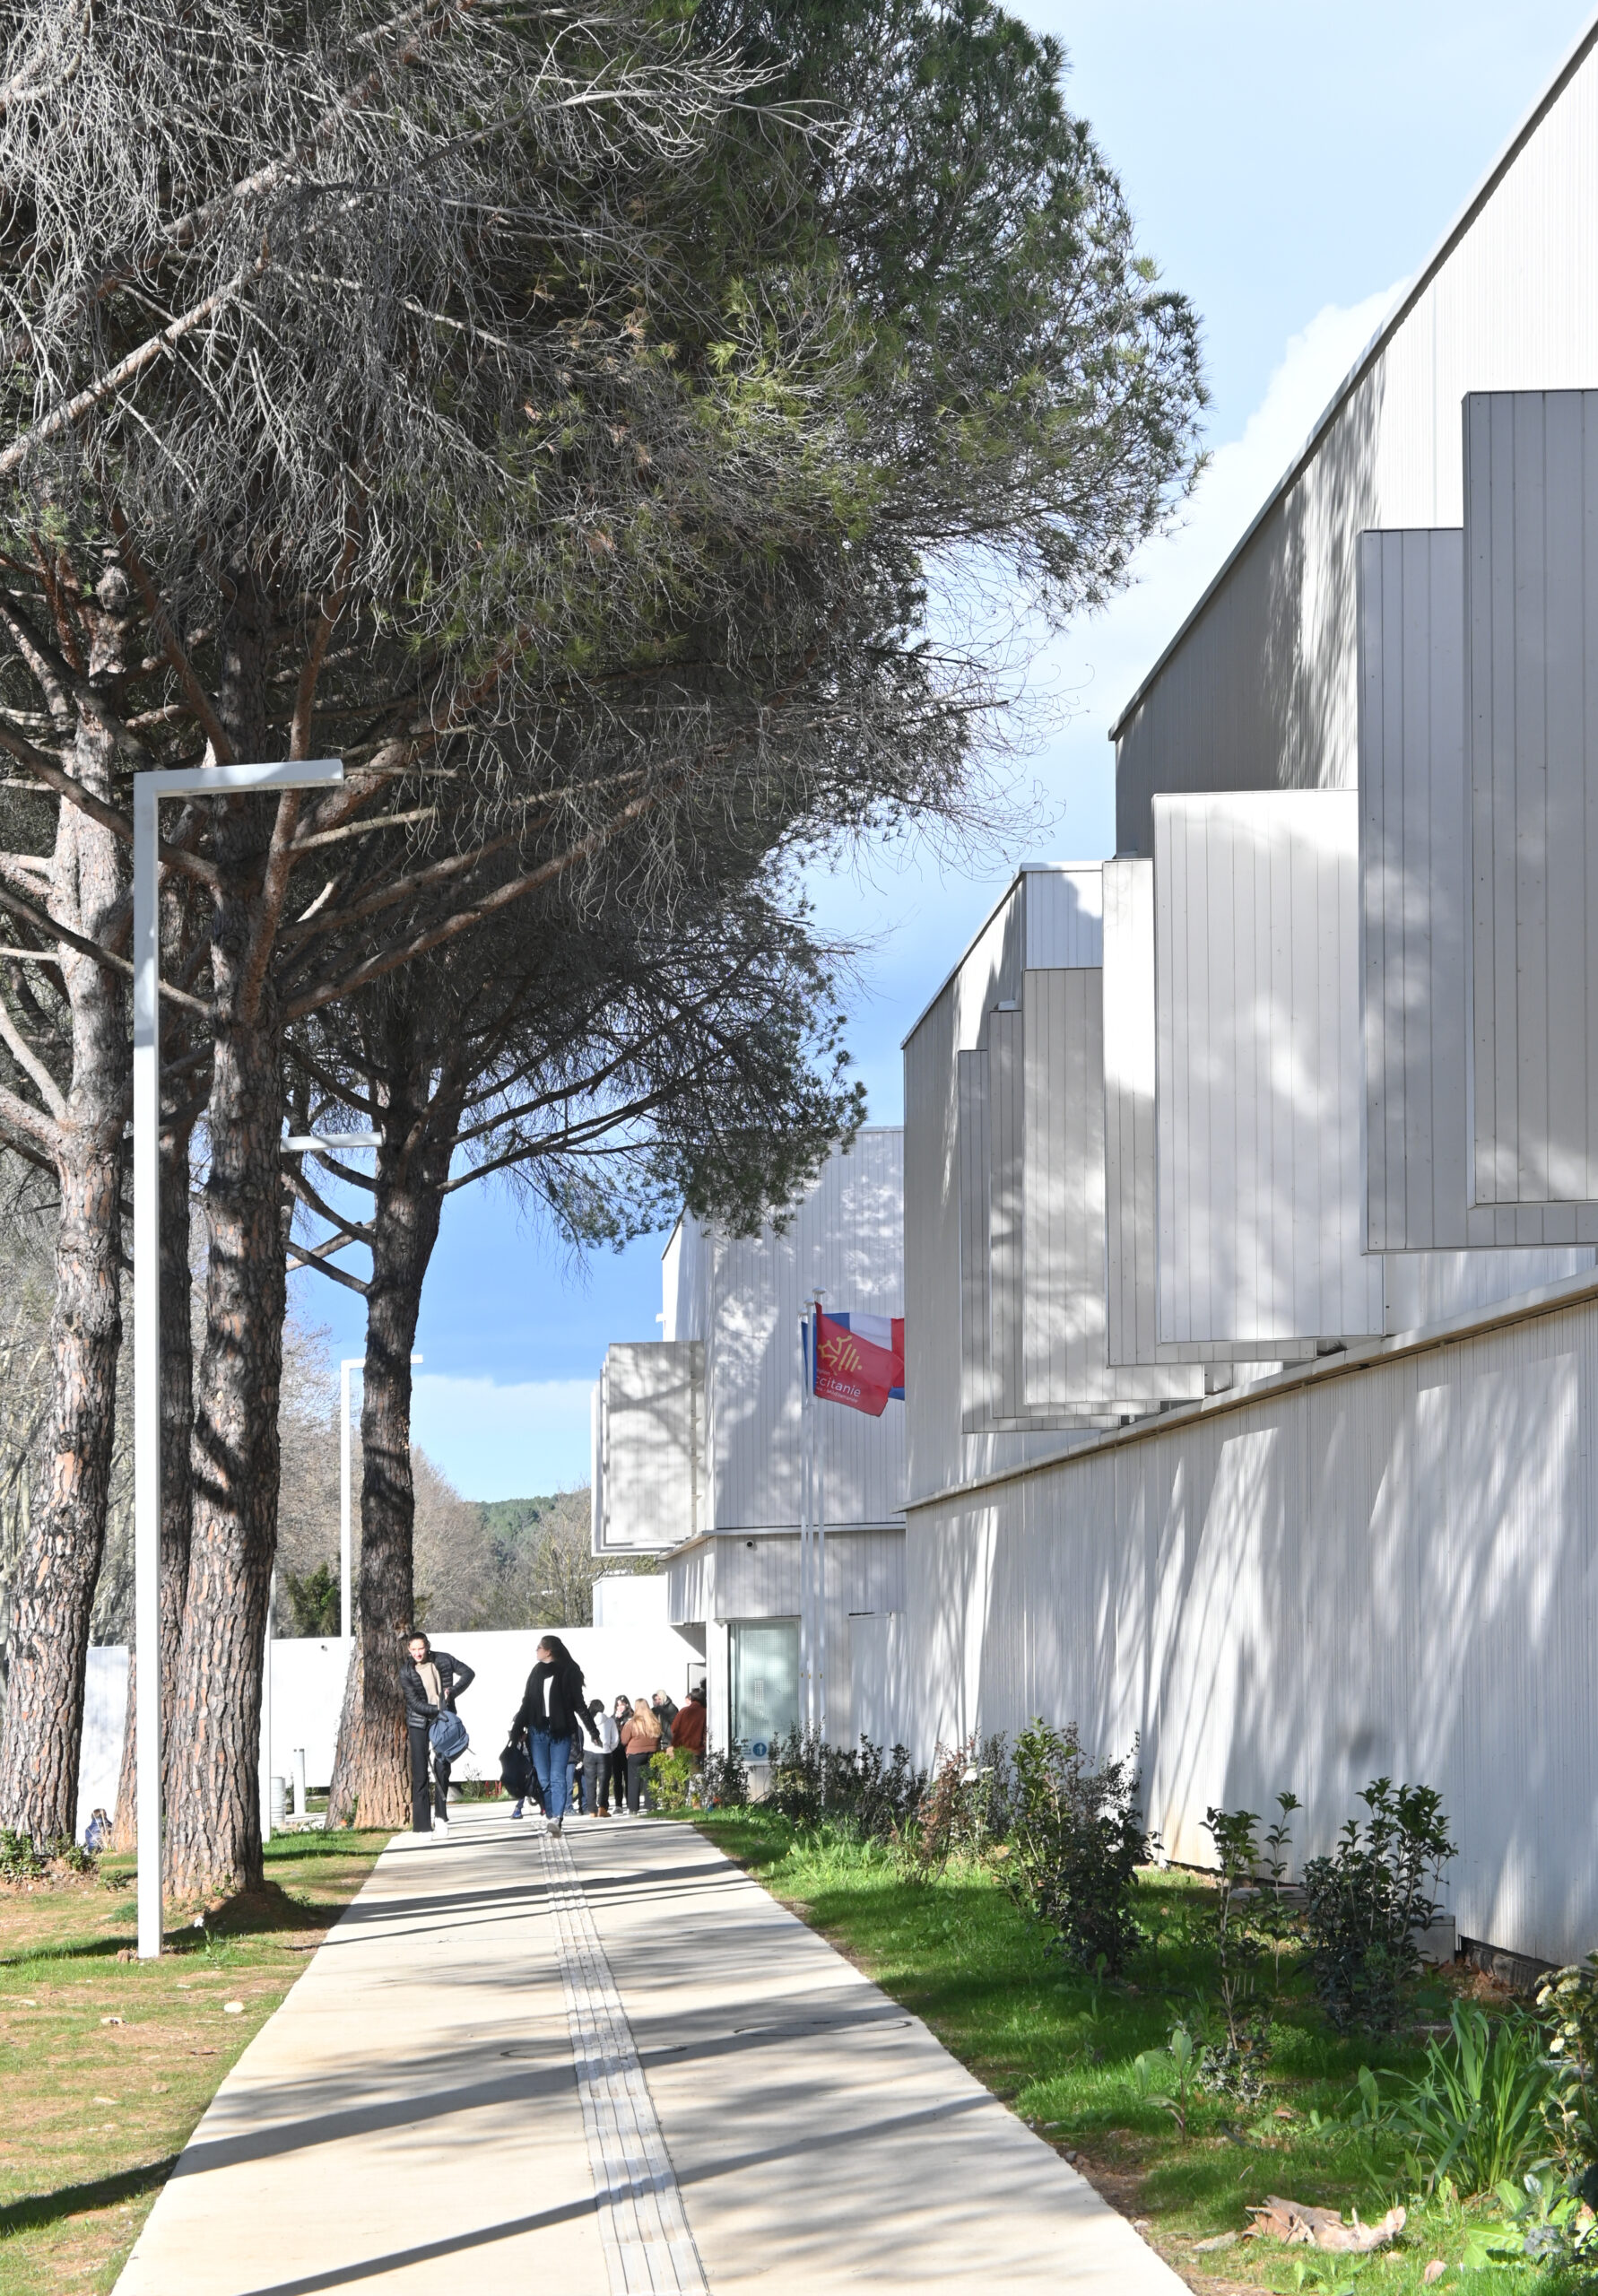 Lycée Bazille Montpellier - Conception architecture Hamerman Rouby architectes